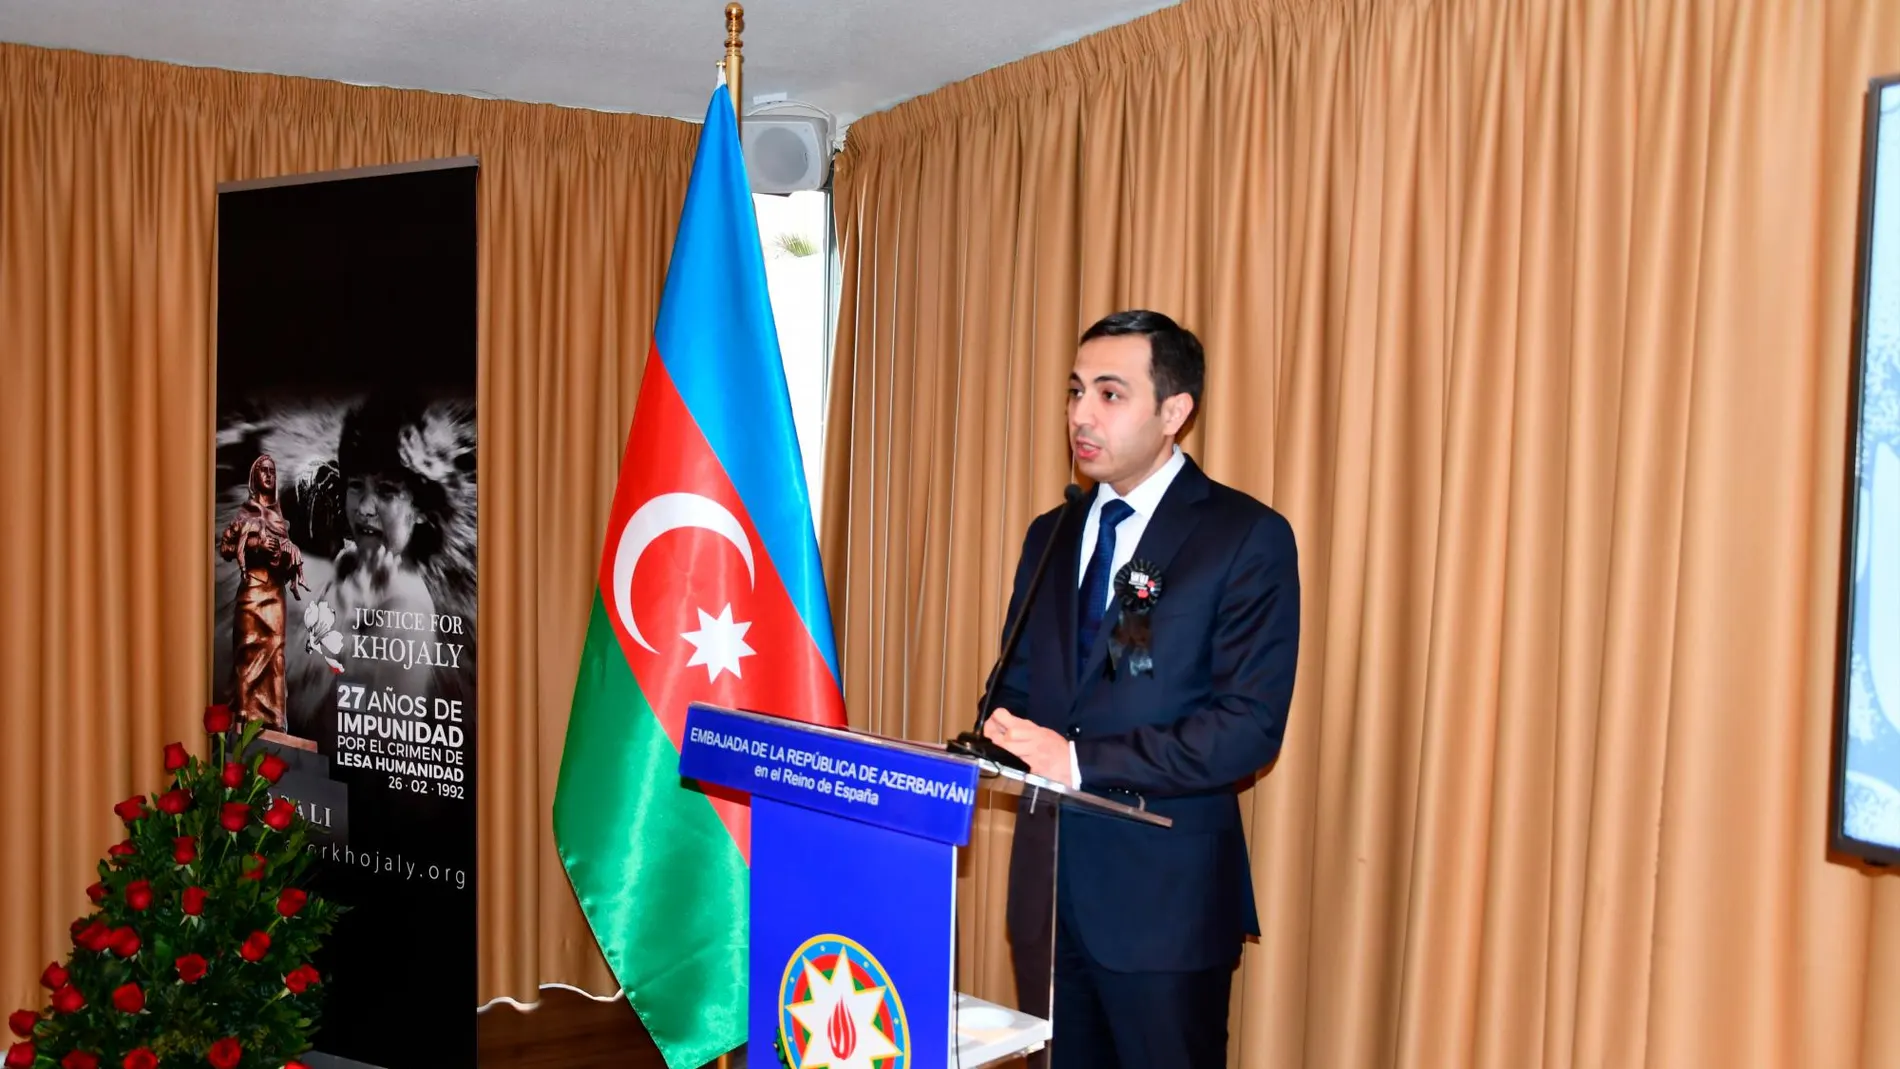 El embajador Anar Maharramov en el acto del XXVII aniversario del genocidio de Jodyalí